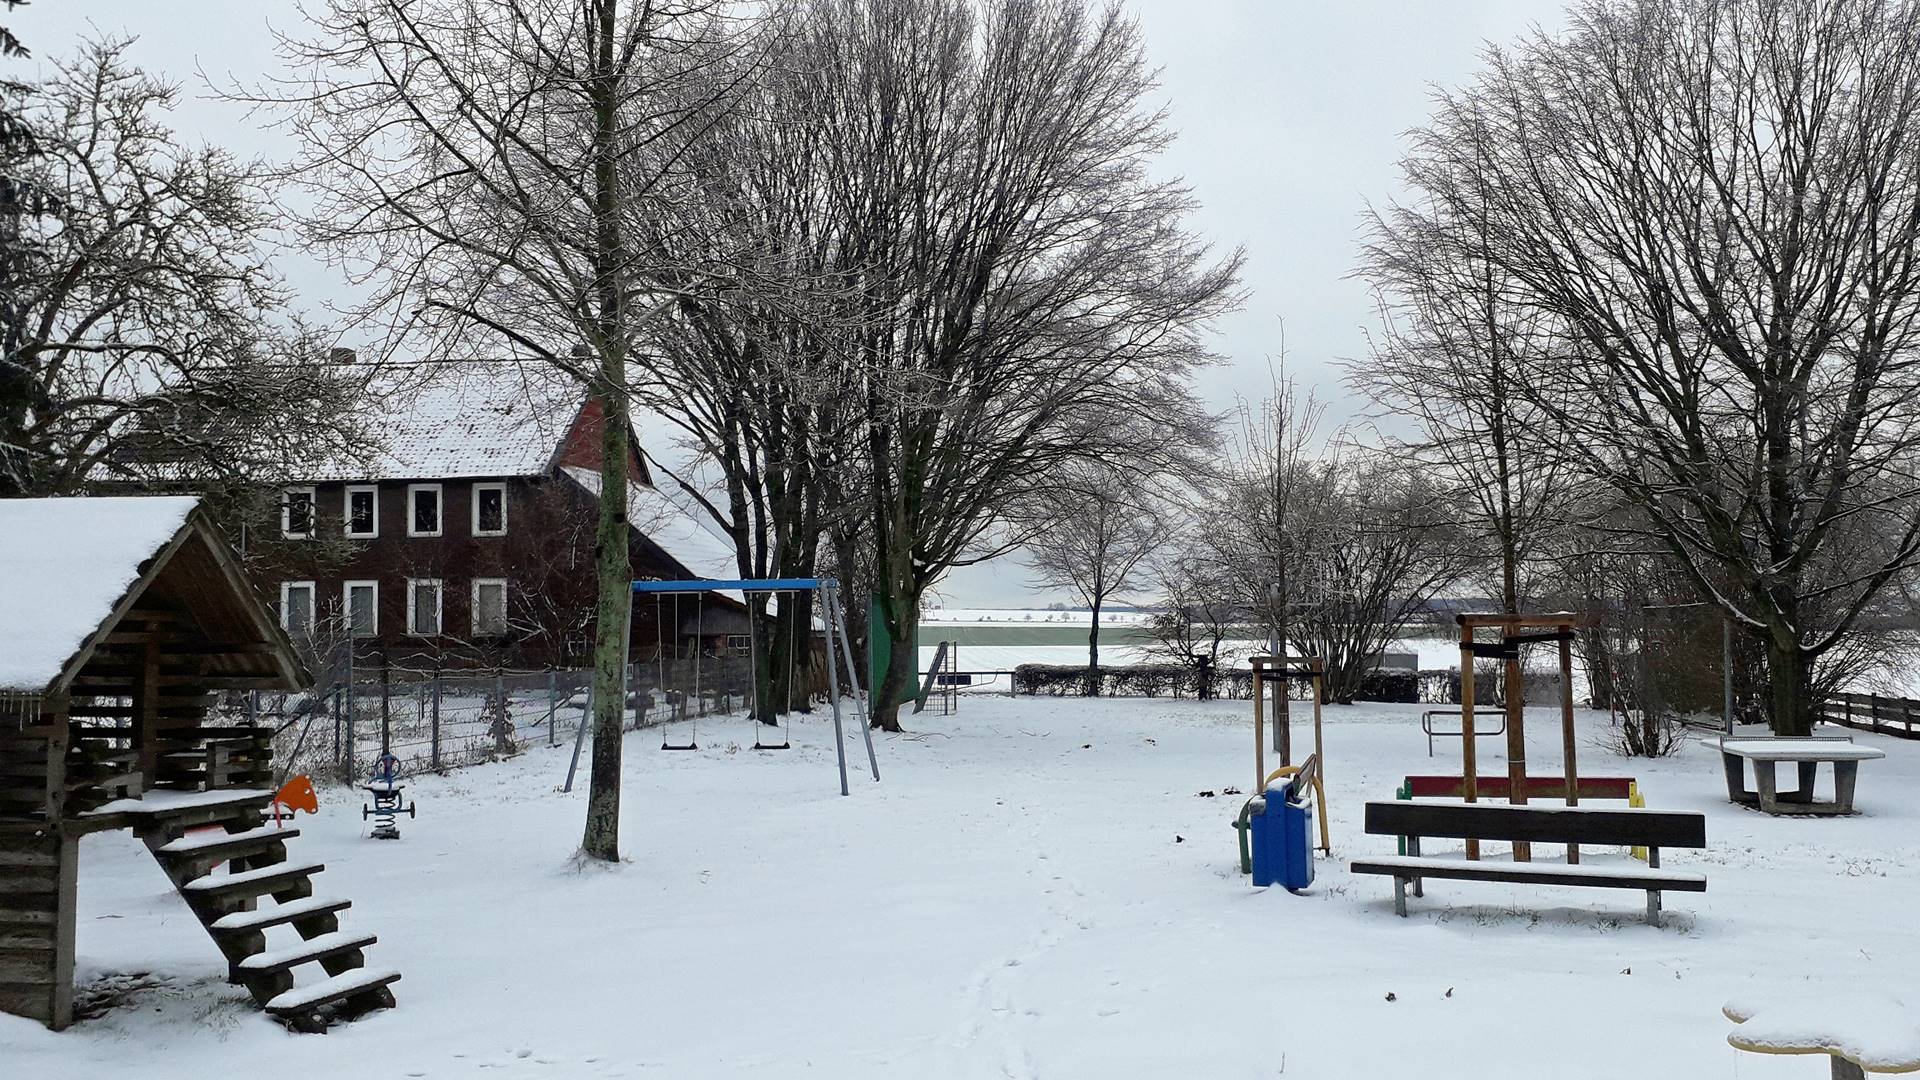 Blick über den verschneiten Spielplatz mit verschiedenen Spielgeräten. Im Hintergrund stehen Bäume und ein Haus.